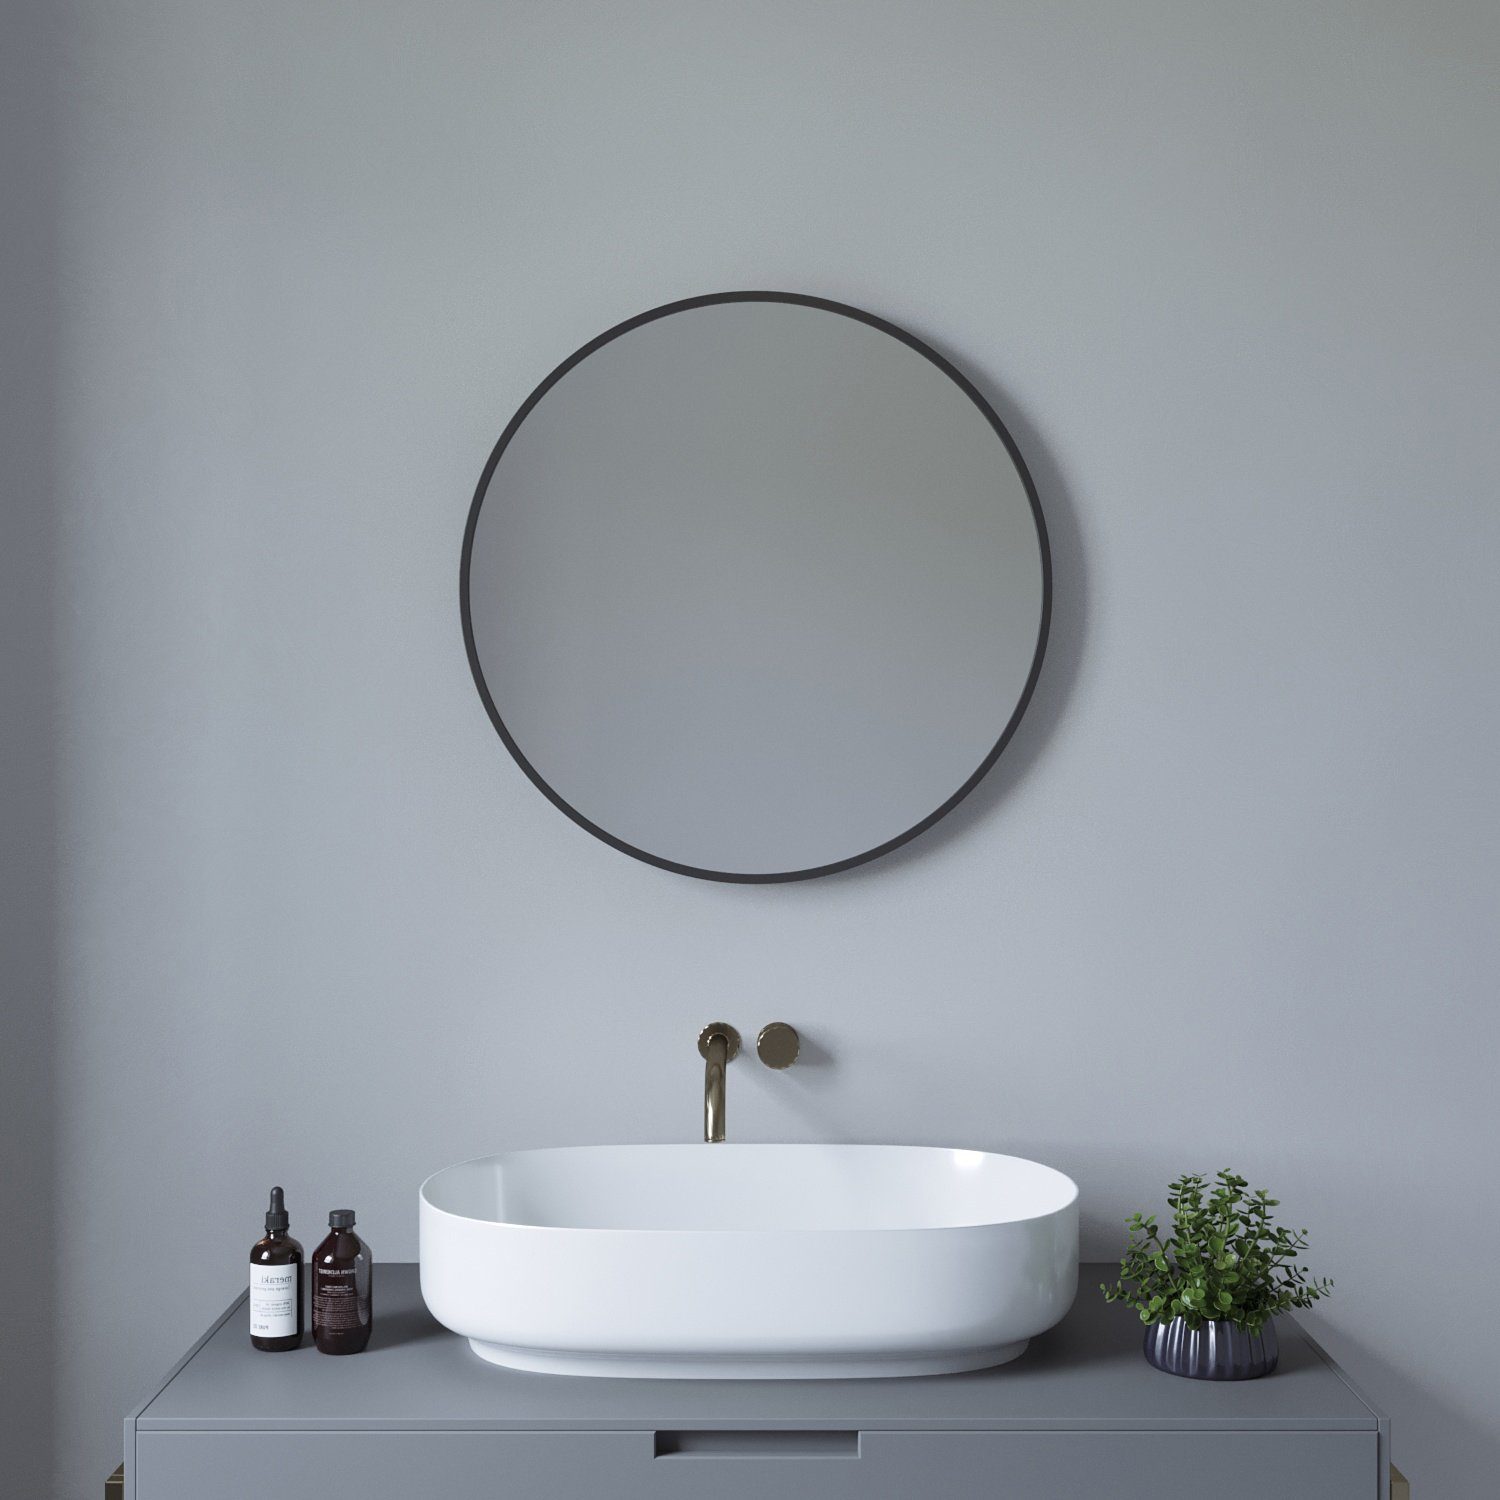 AQUABATOS Badspiegel Badezimmerspiegel Wandspiegel Spiegel Rund Schwarz Gold Vintage, 60x60 cm, mit Aluminiumrahmen, inkl. Befestigungsmaterial, Wandmontage schwarz matt